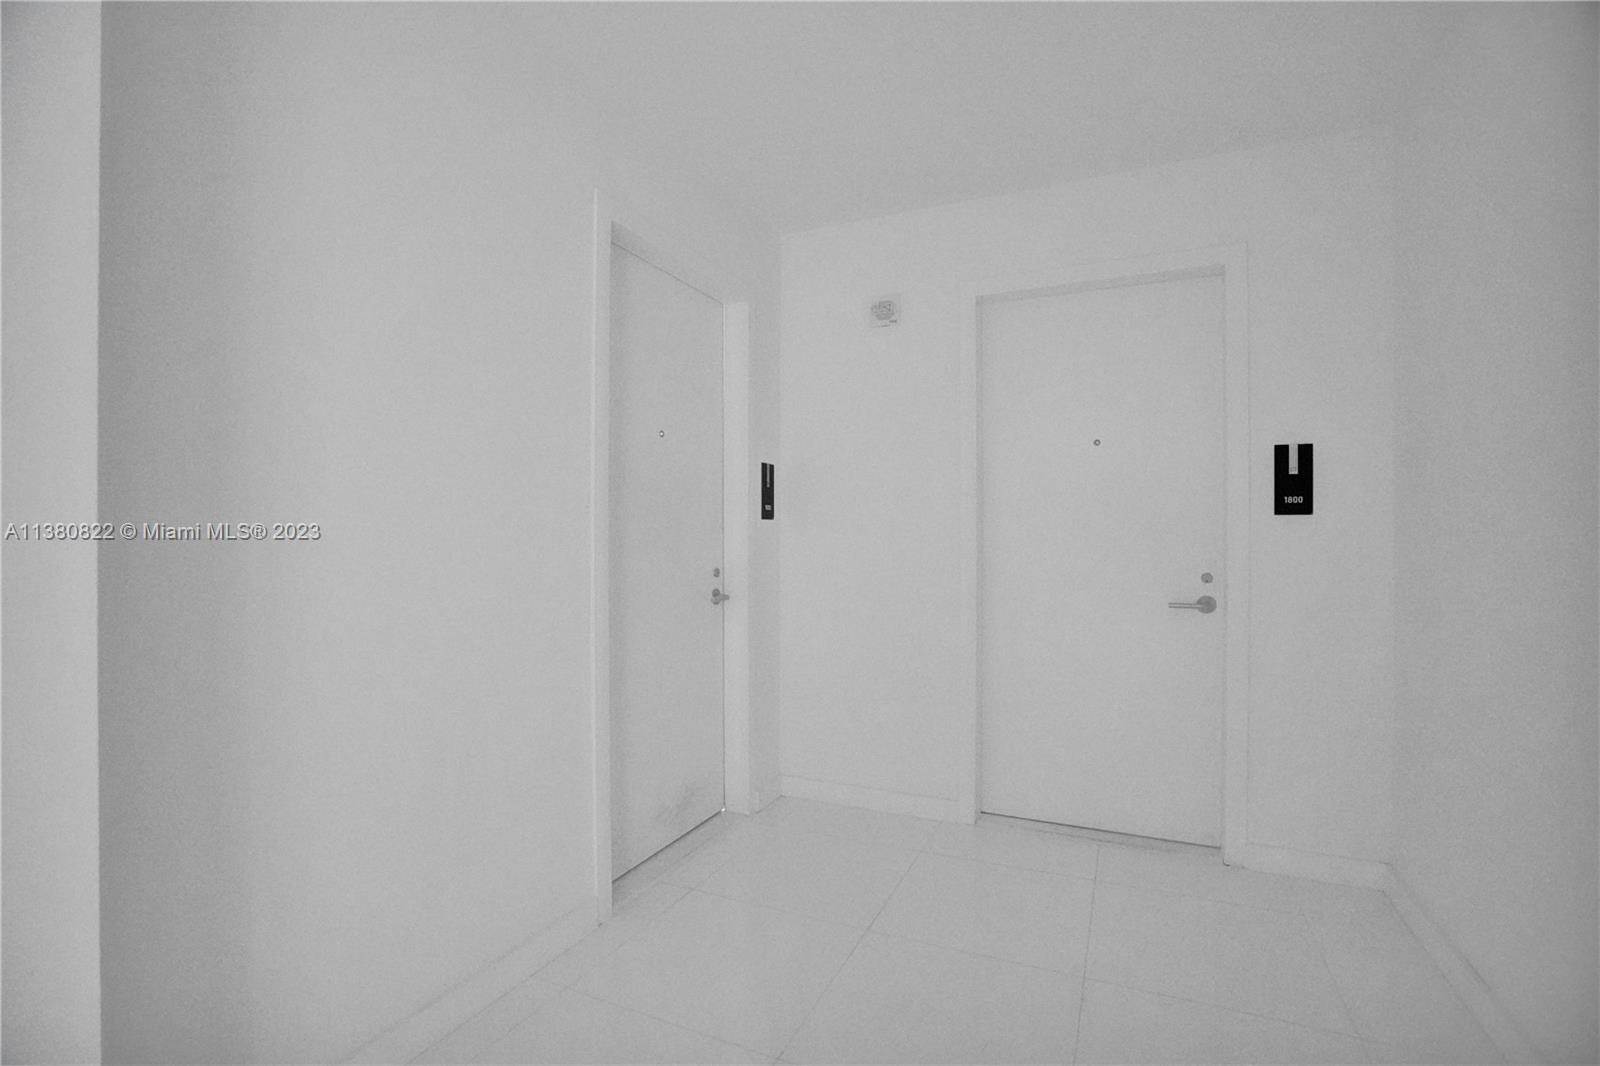 公寓 为 销售 在 Park West, 迈阿密, FL 33132